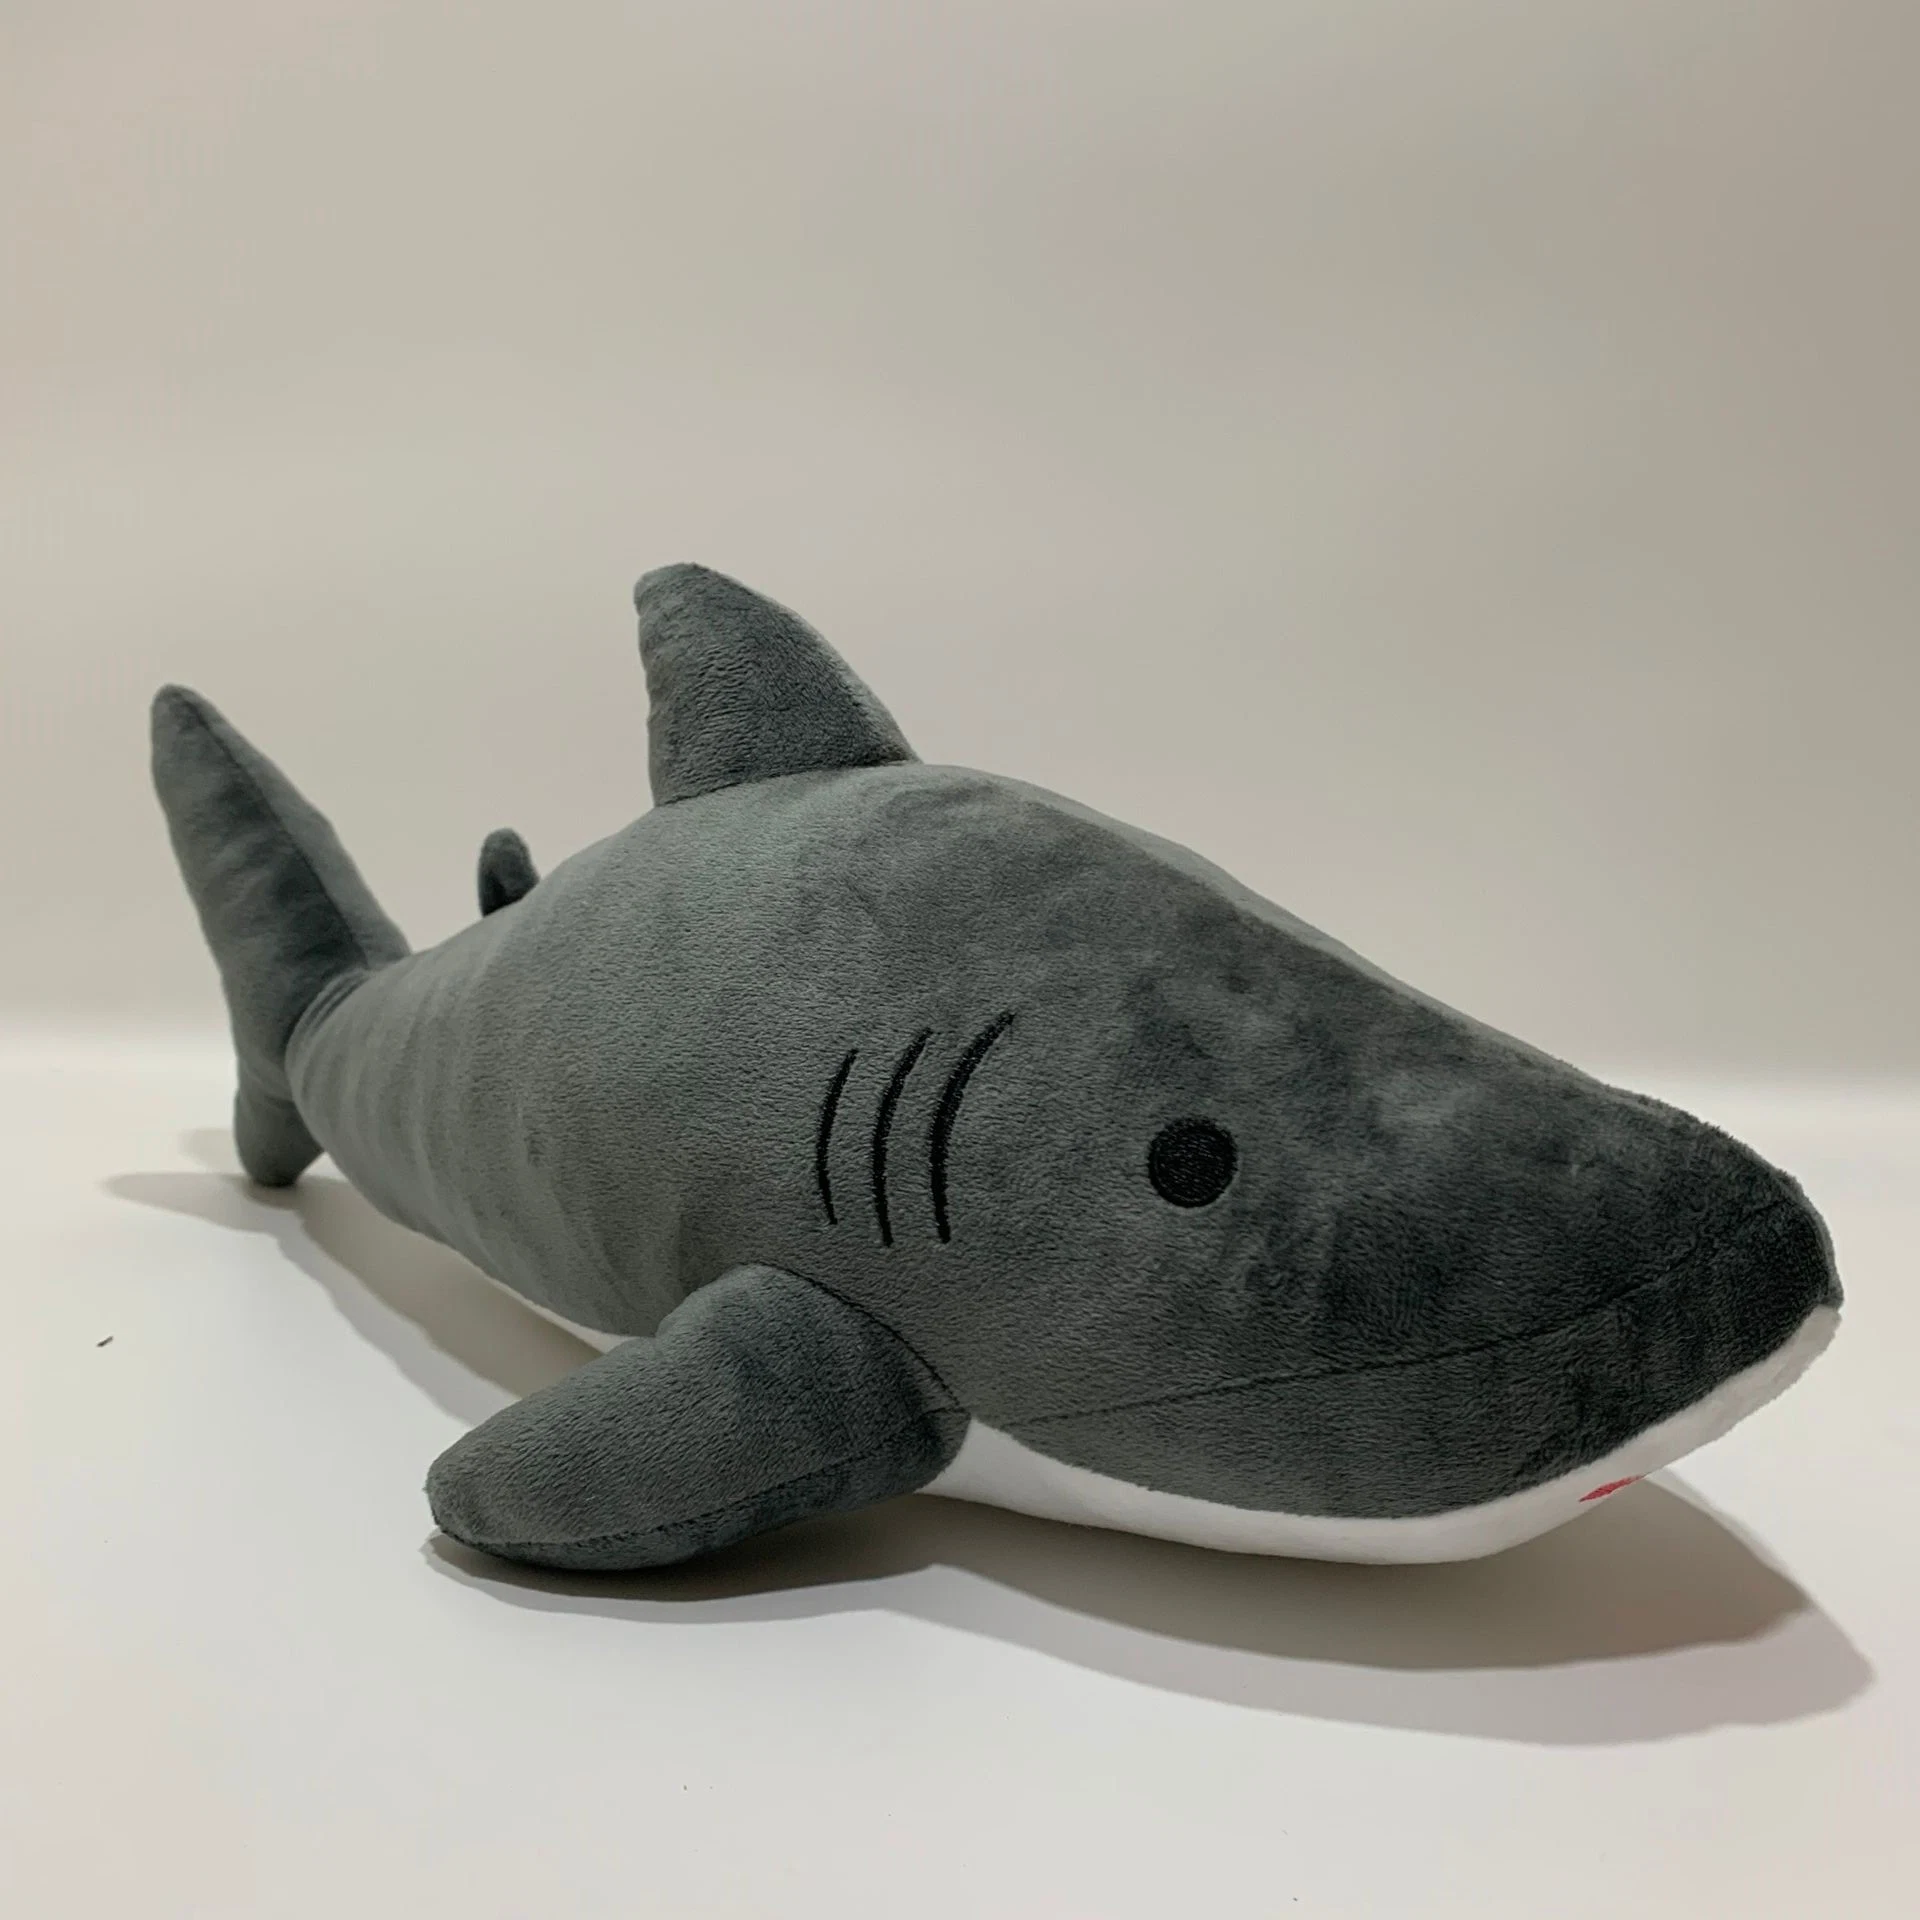 Novo animal de peluche Shark Toy Stuffed para toda a Europa Peluche personalizável de série